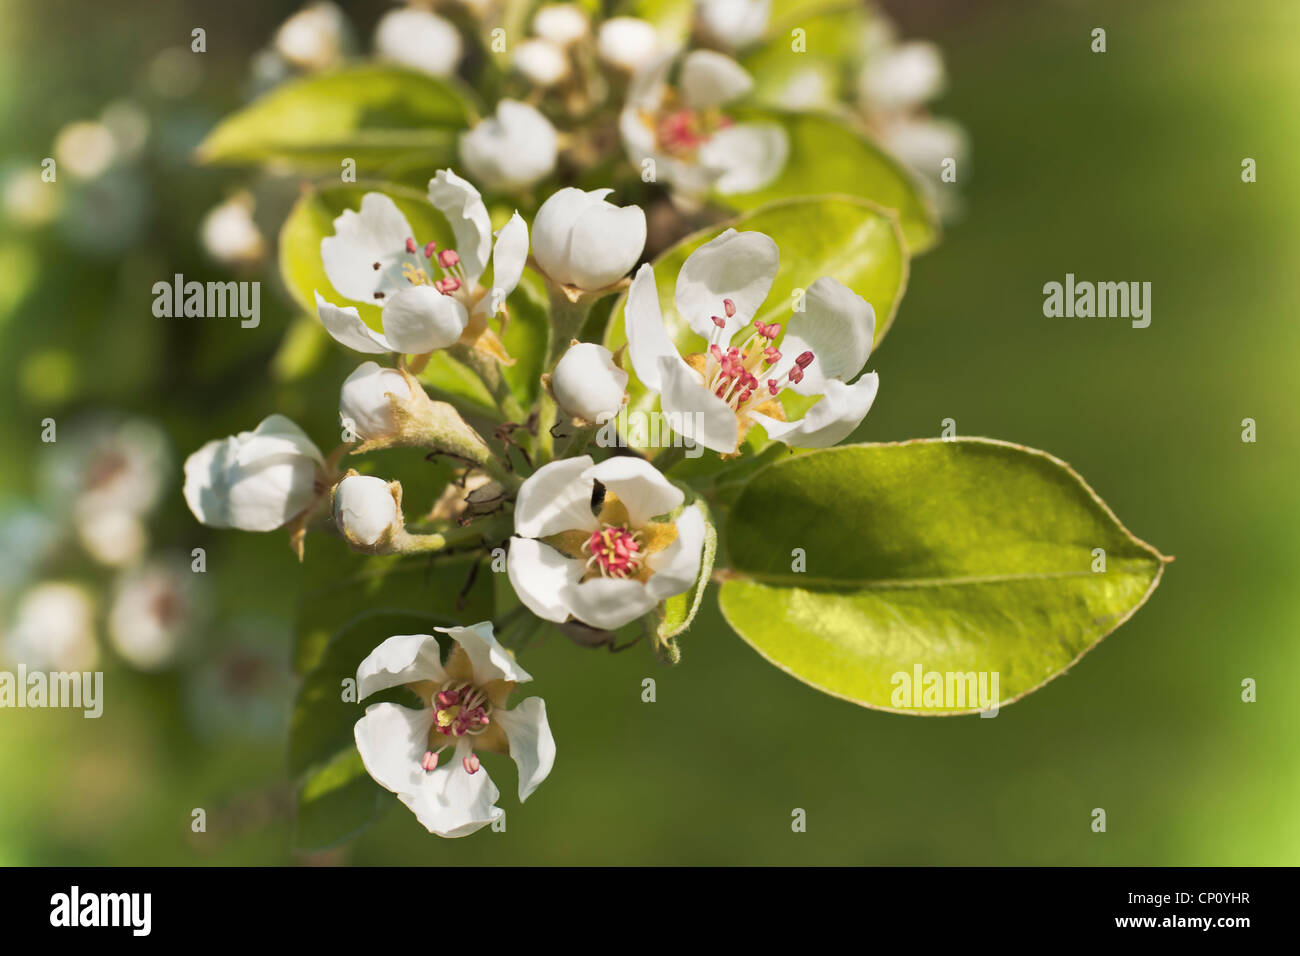 Detailansicht von Apfelblüten | Detail view of apple blossoms Stock Photo